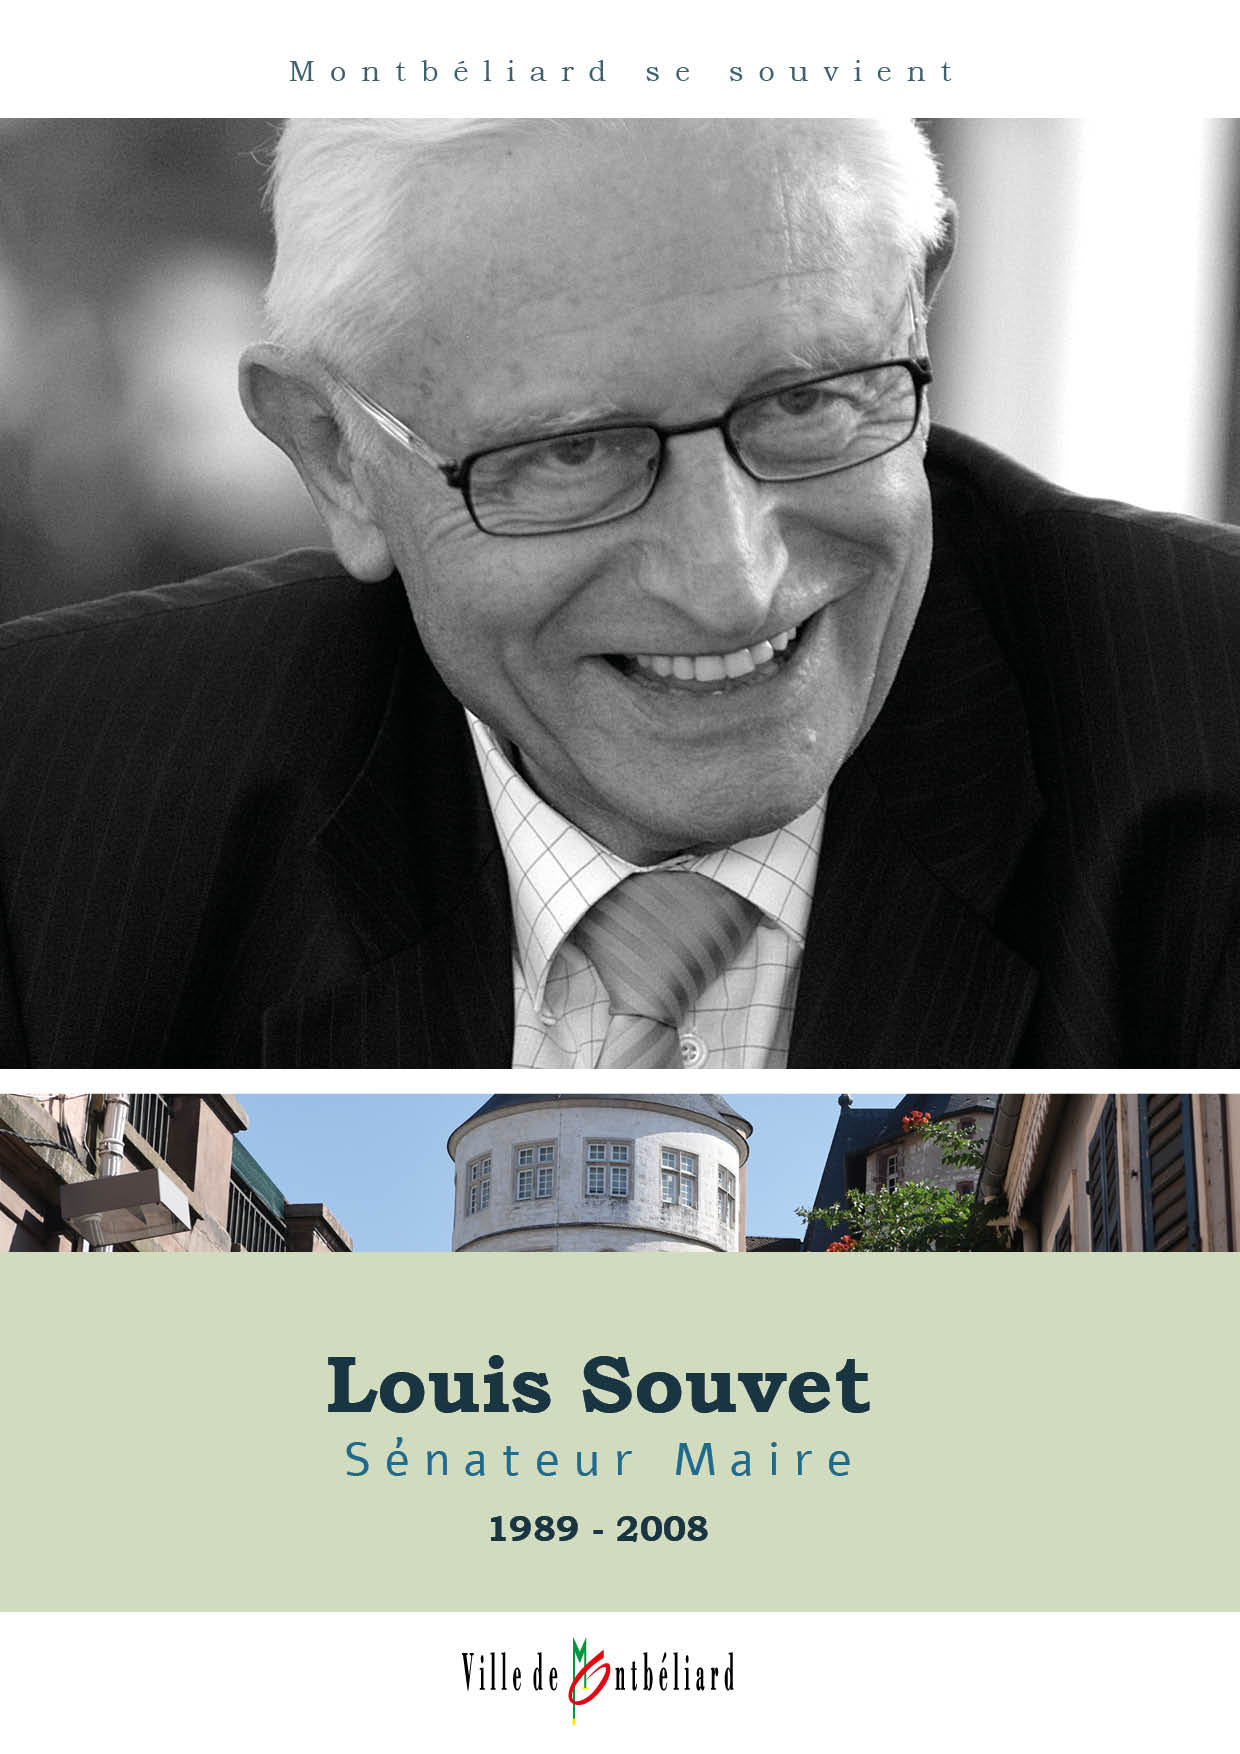 Hommage à Louis Souvet, Sénateur Maire (1989-2008)